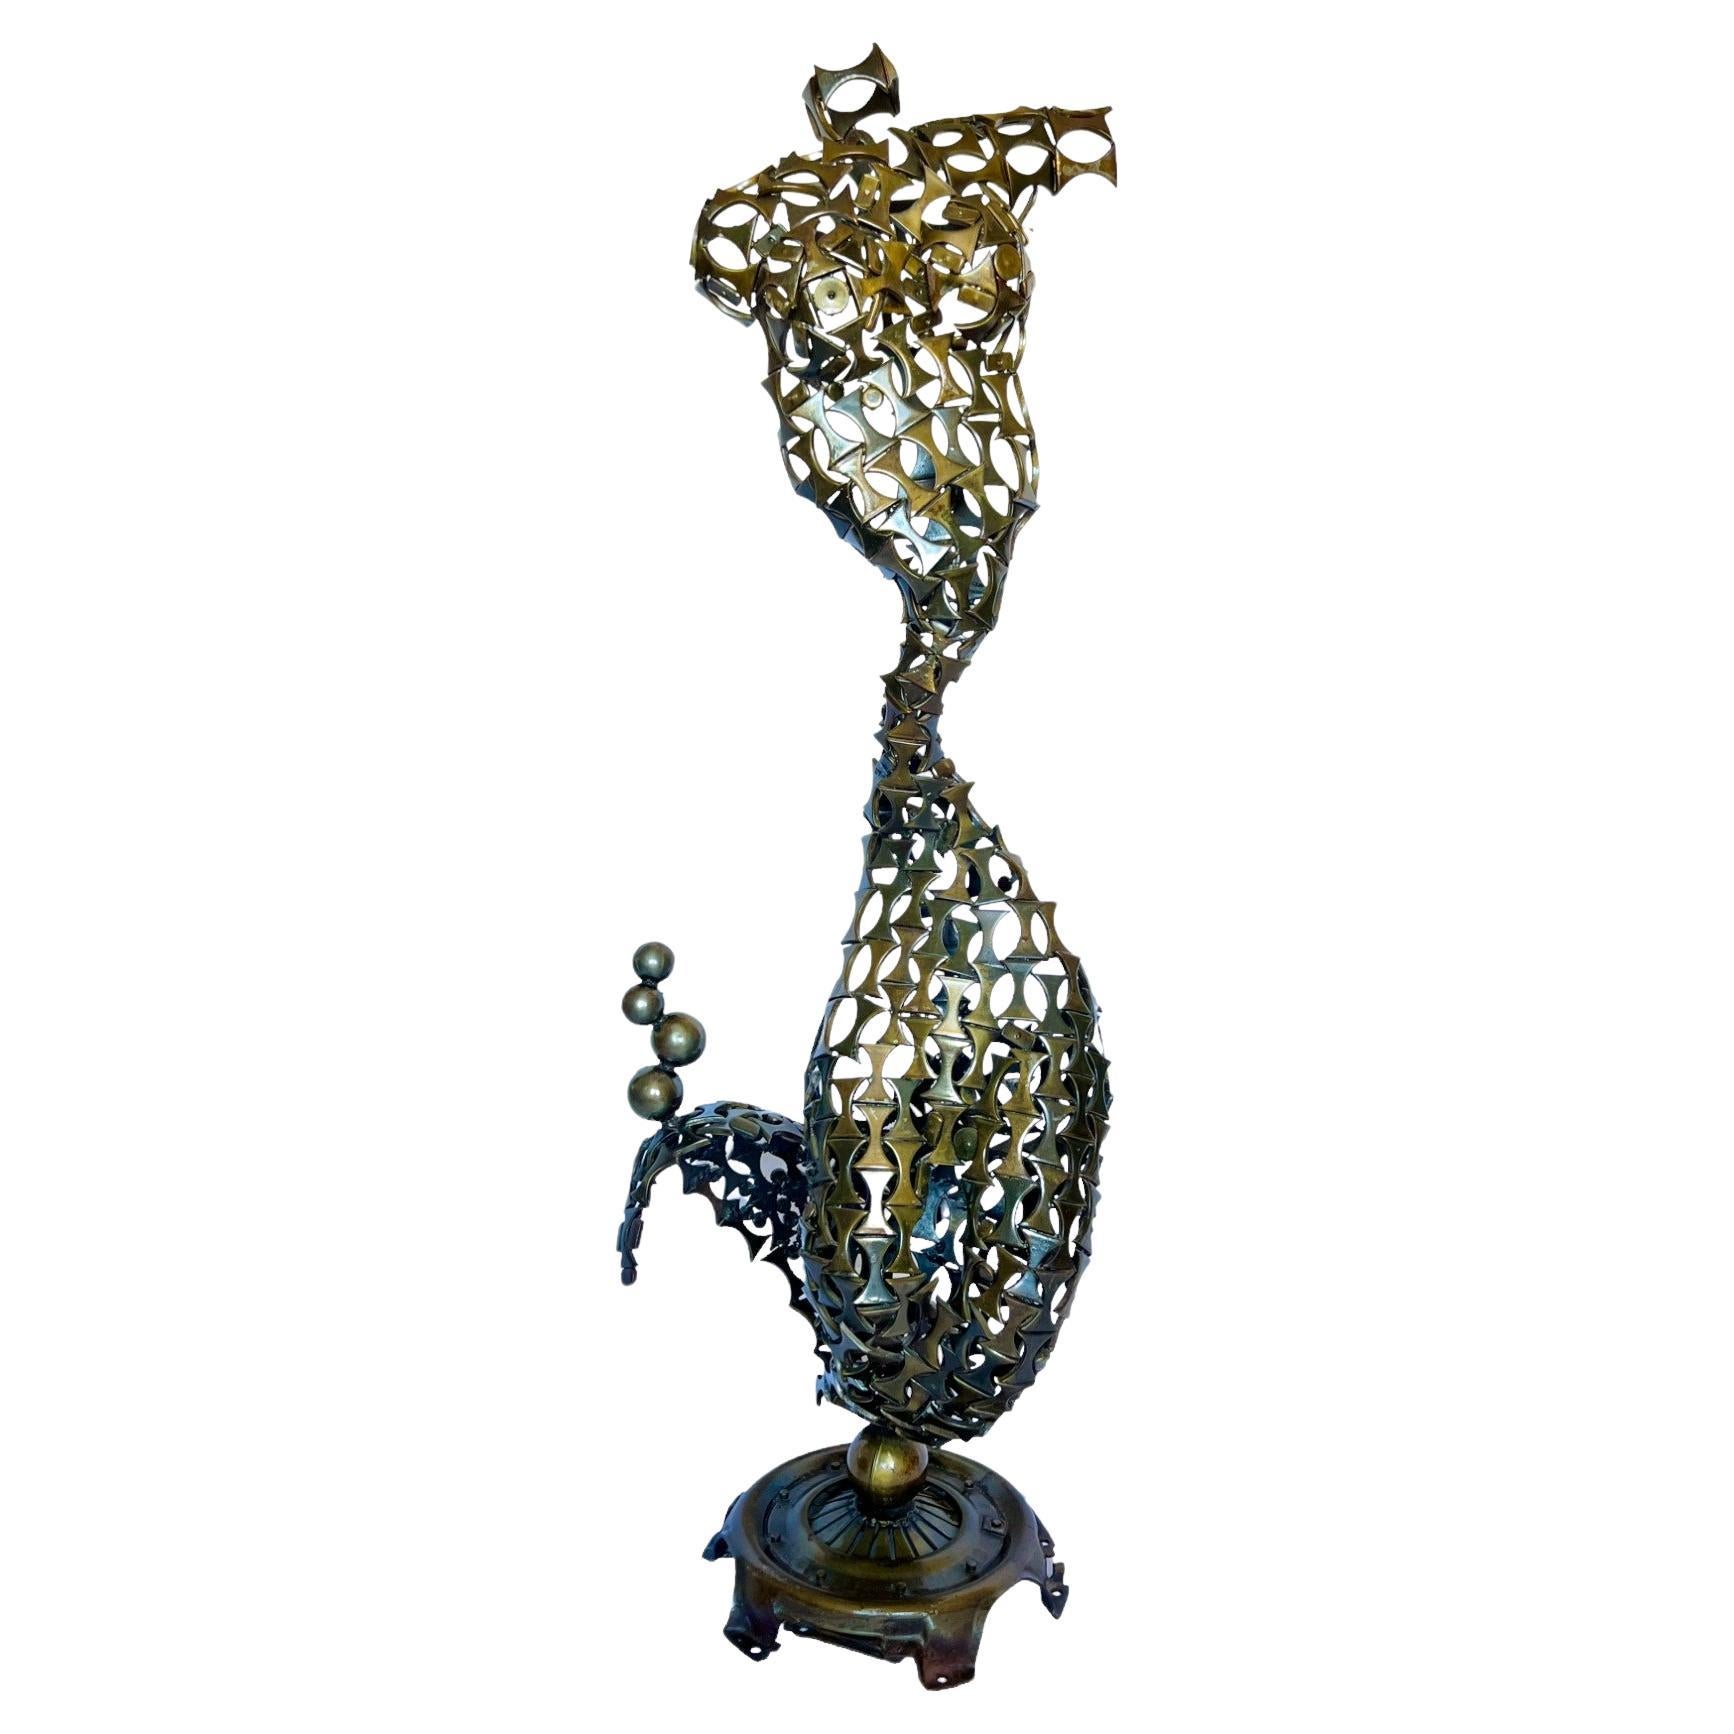 Brutalist Welded Metal Abstract Mermaid Sculpture For Sale